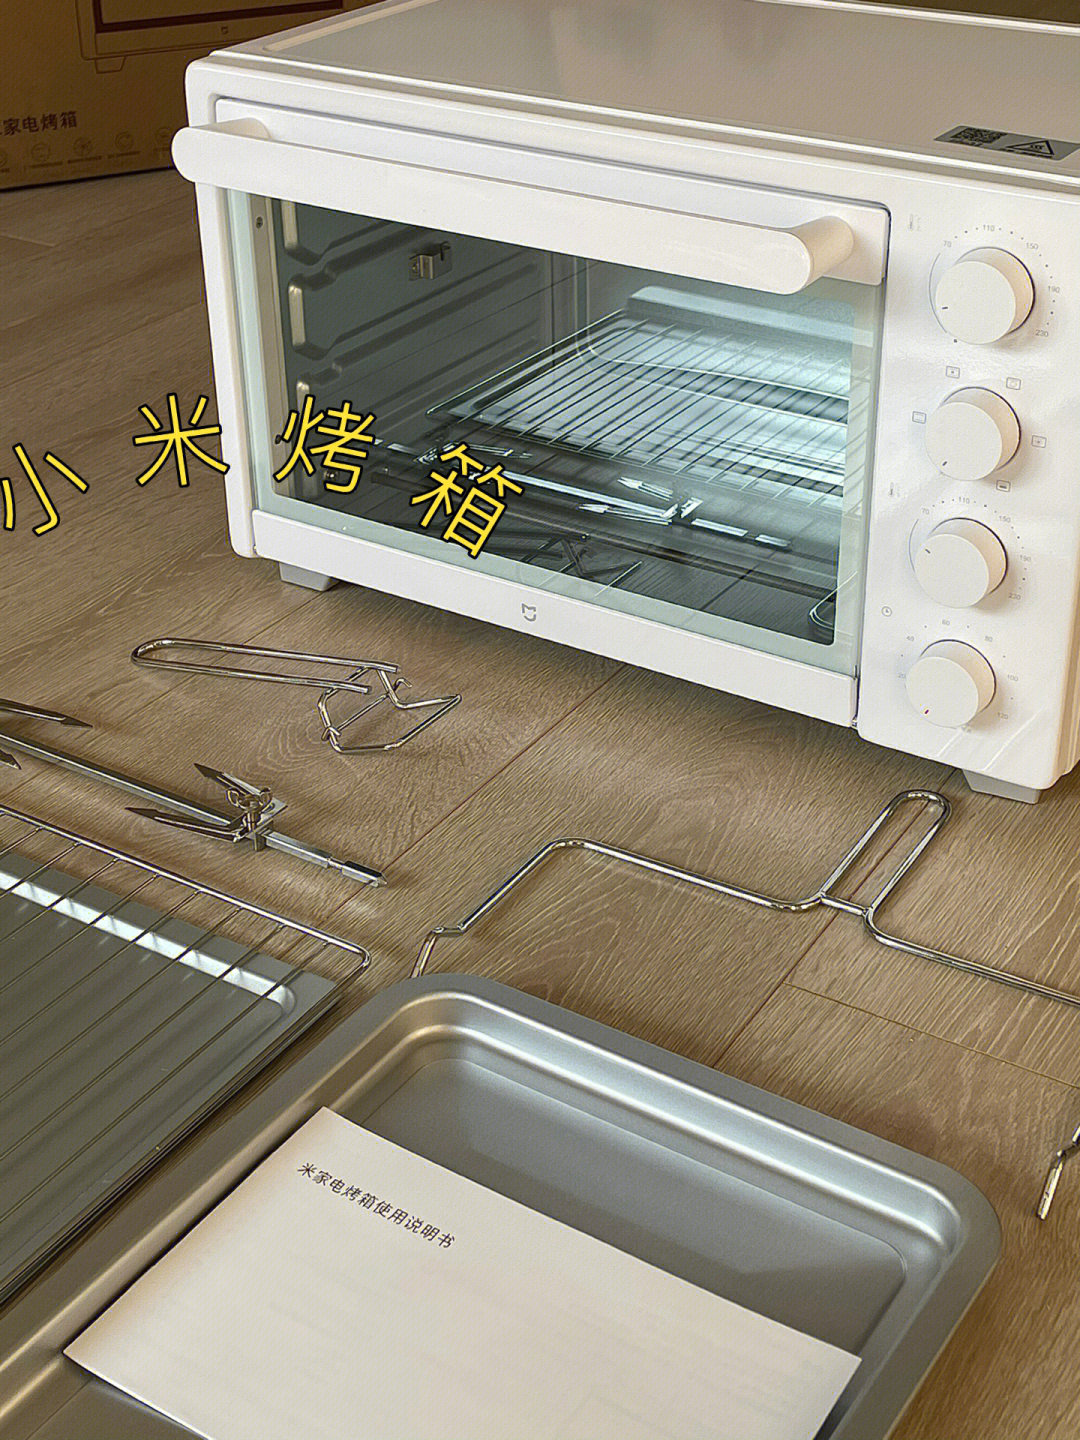 小米电烤箱使用说明书图片